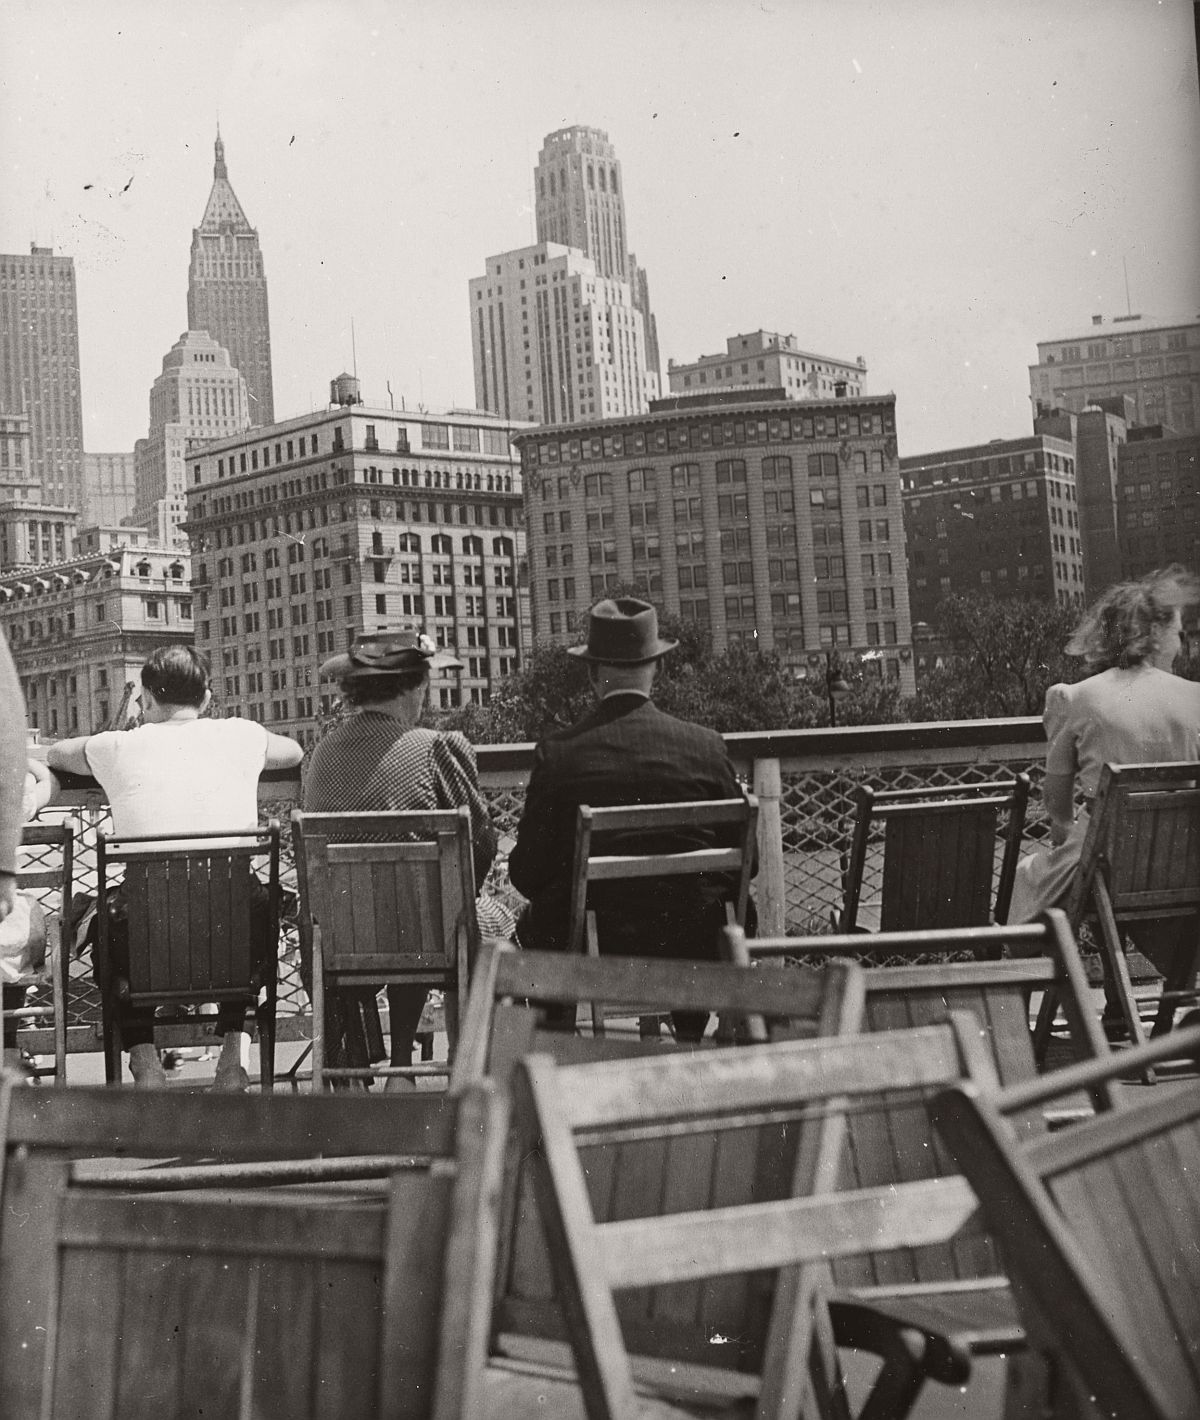 Robert Haas: On the ferry, New York City, 1941 © Wien Museum/Sammlung Robert Haas